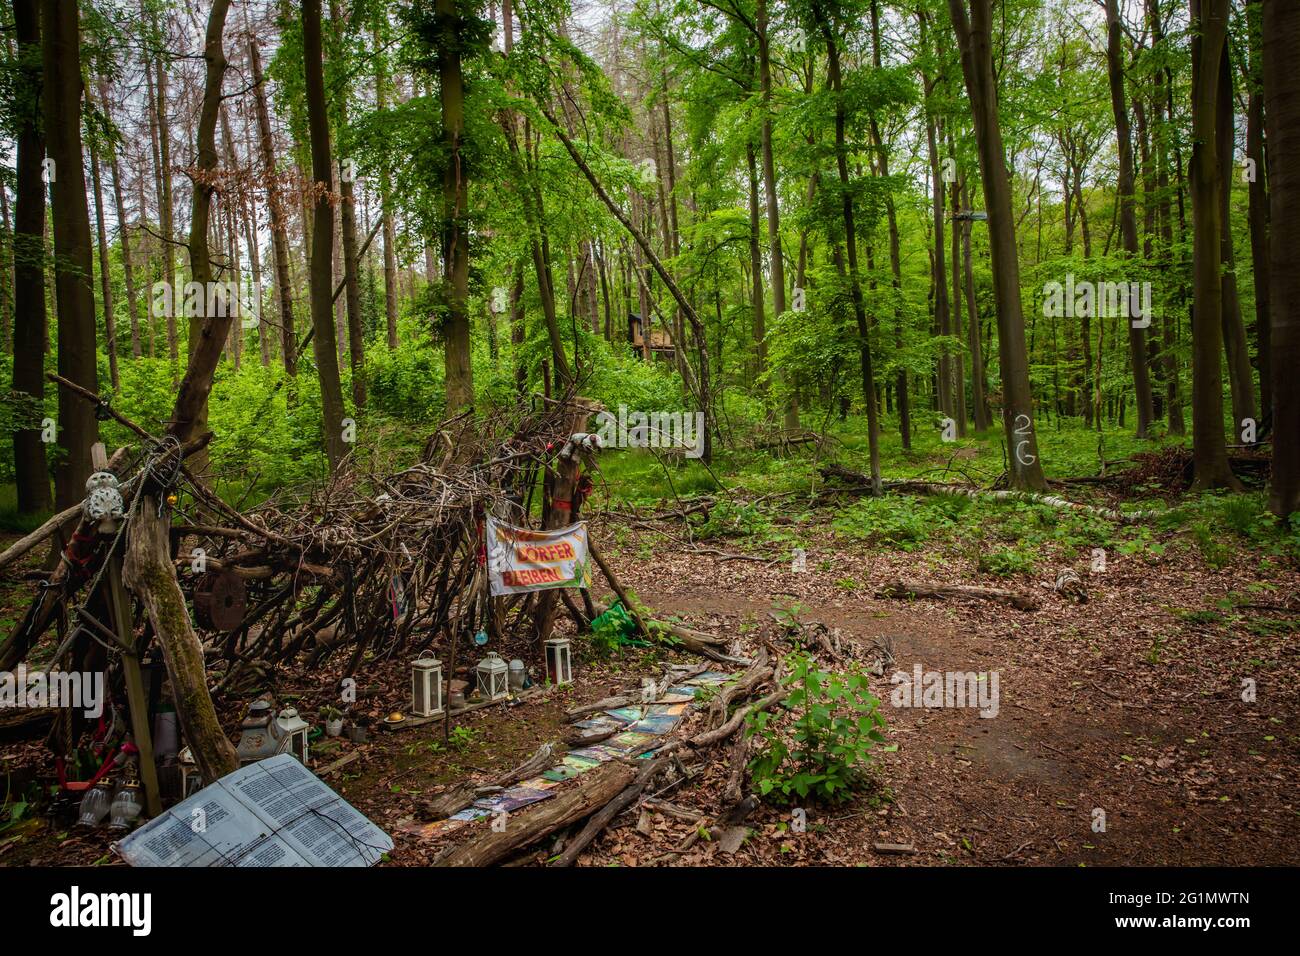 Dettagli natura conservazione attivisti protesta accampamento nella foresta di Hambach Foto Stock